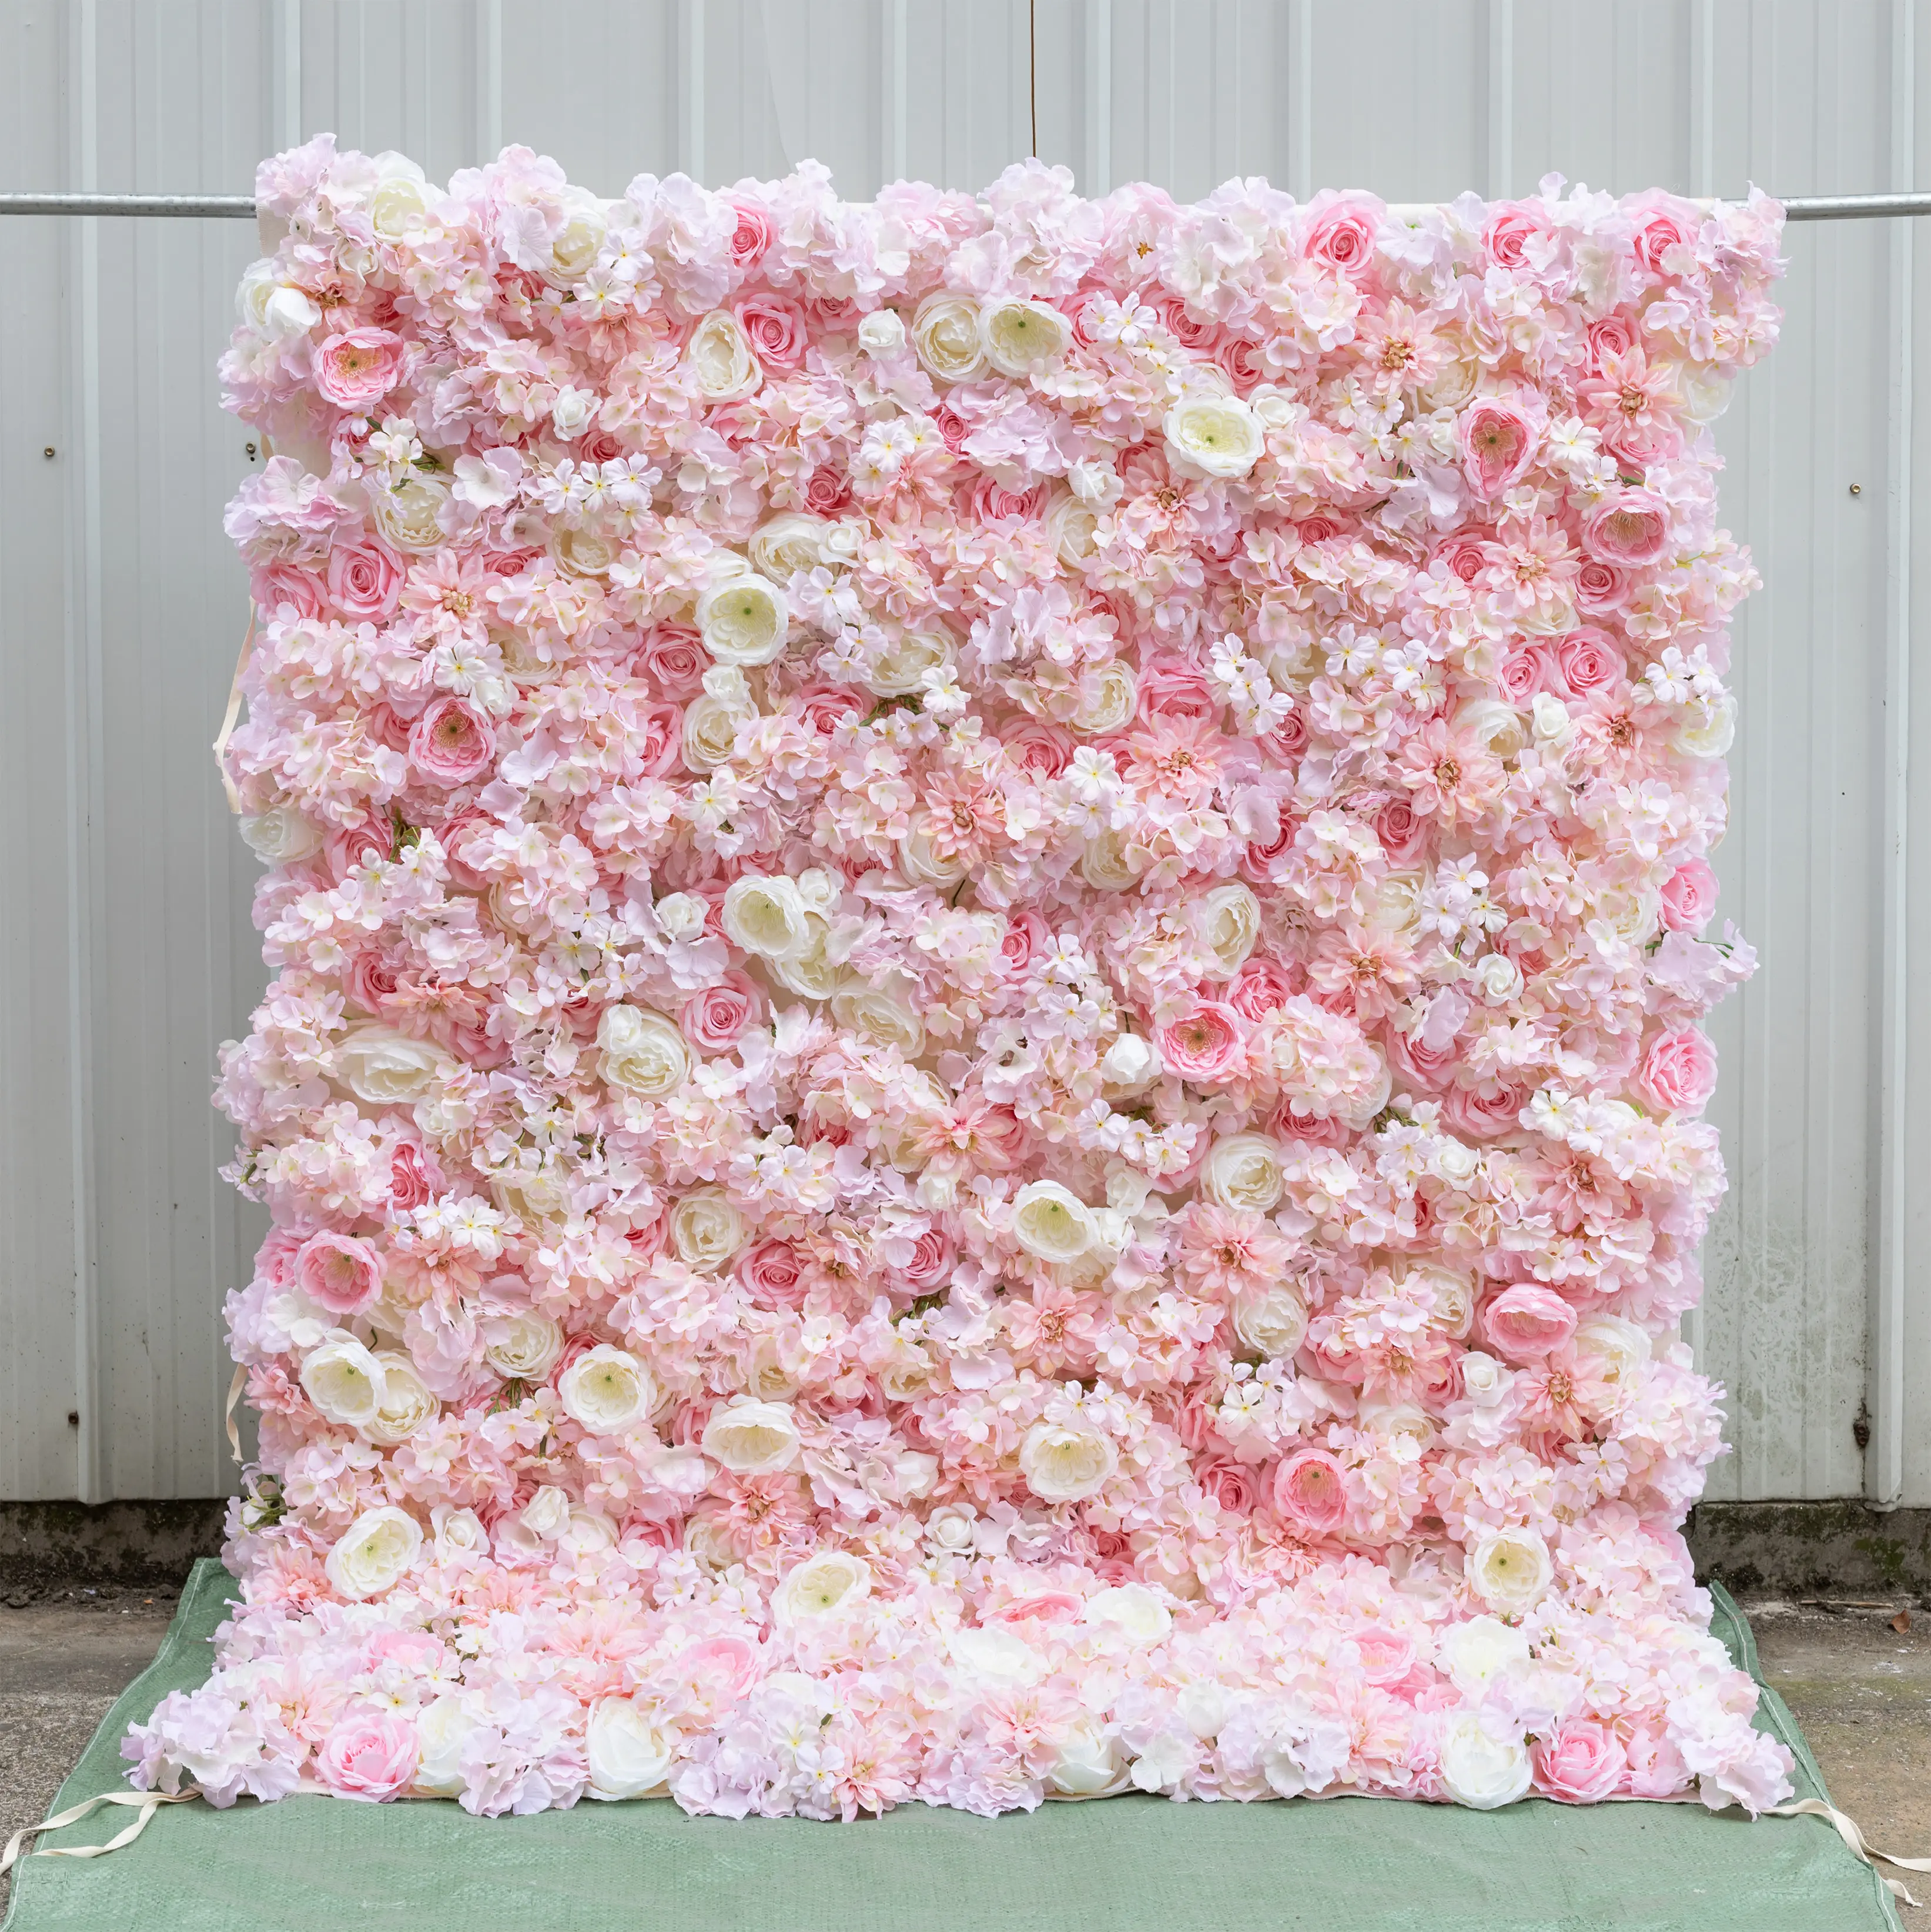 8ftx8ft 3d rouge mariage mur toile de fond tissu artificiel enrouler mur de fleurs pour la décoration de mariage